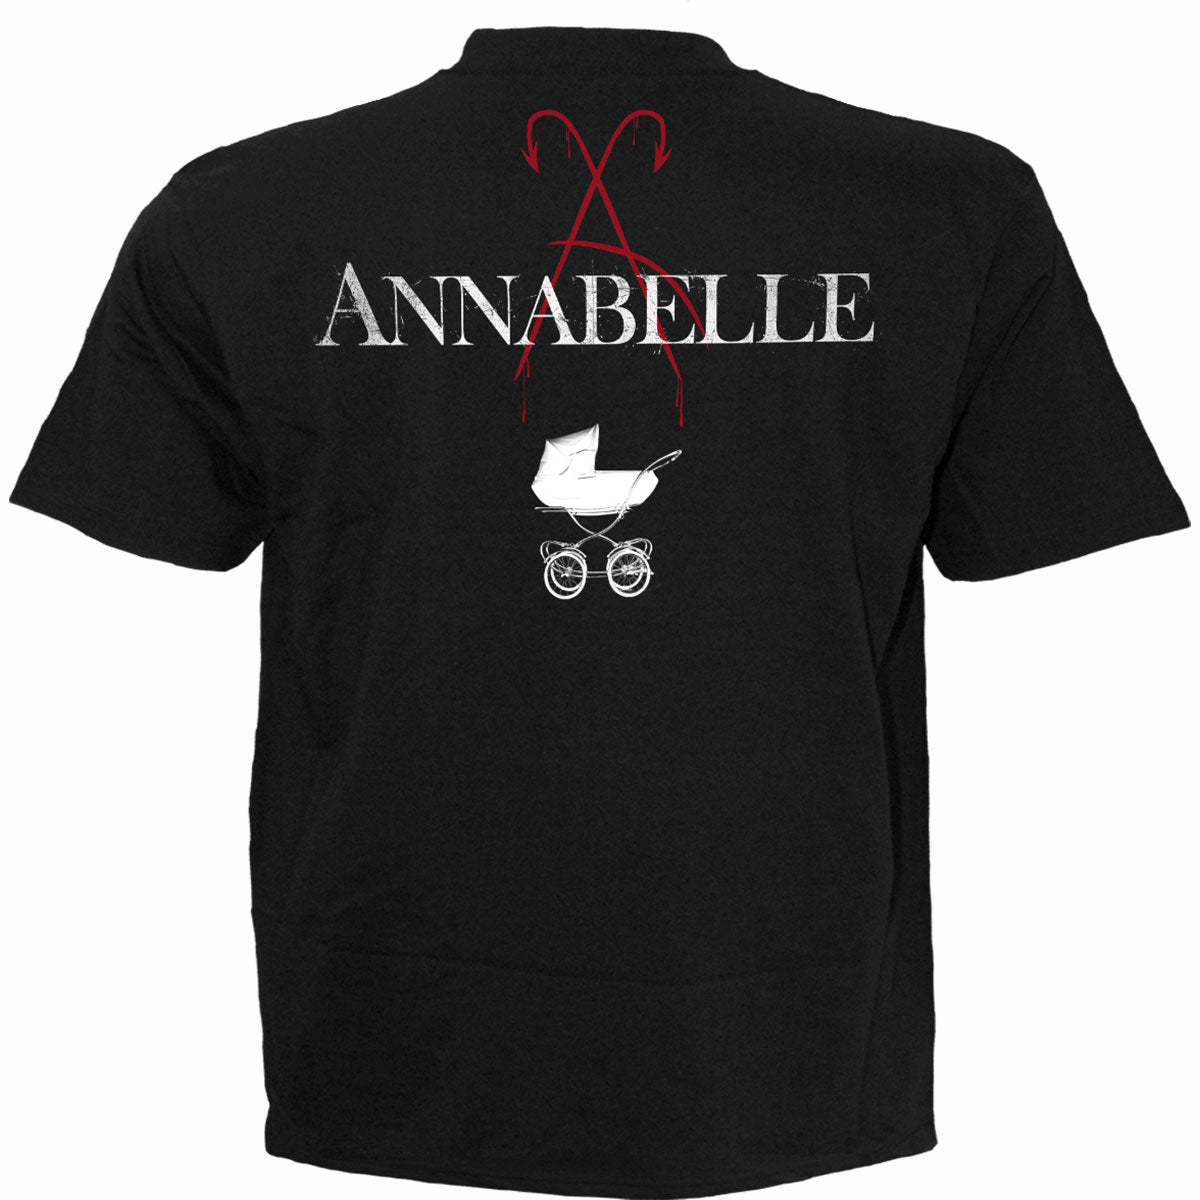 ANNABELLE - FOUND YOU - Maglietta nera